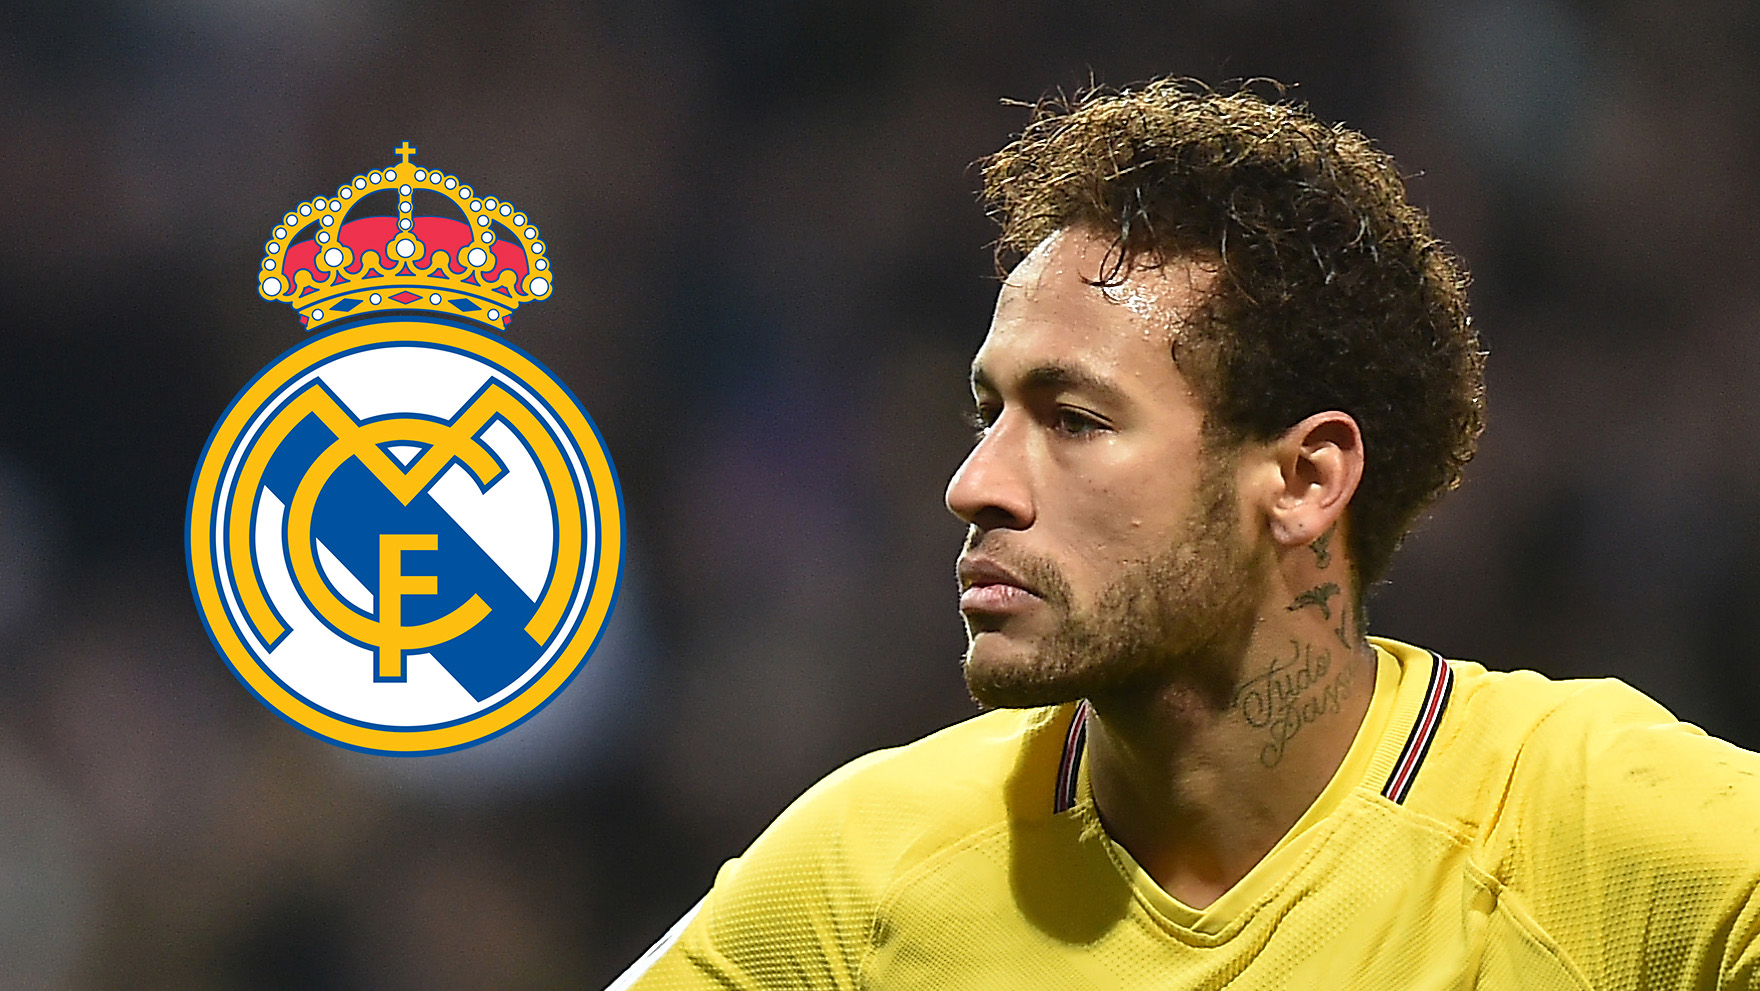 XONG: Coi như Neymar đã là người của Real Madrid - Bóng Đá